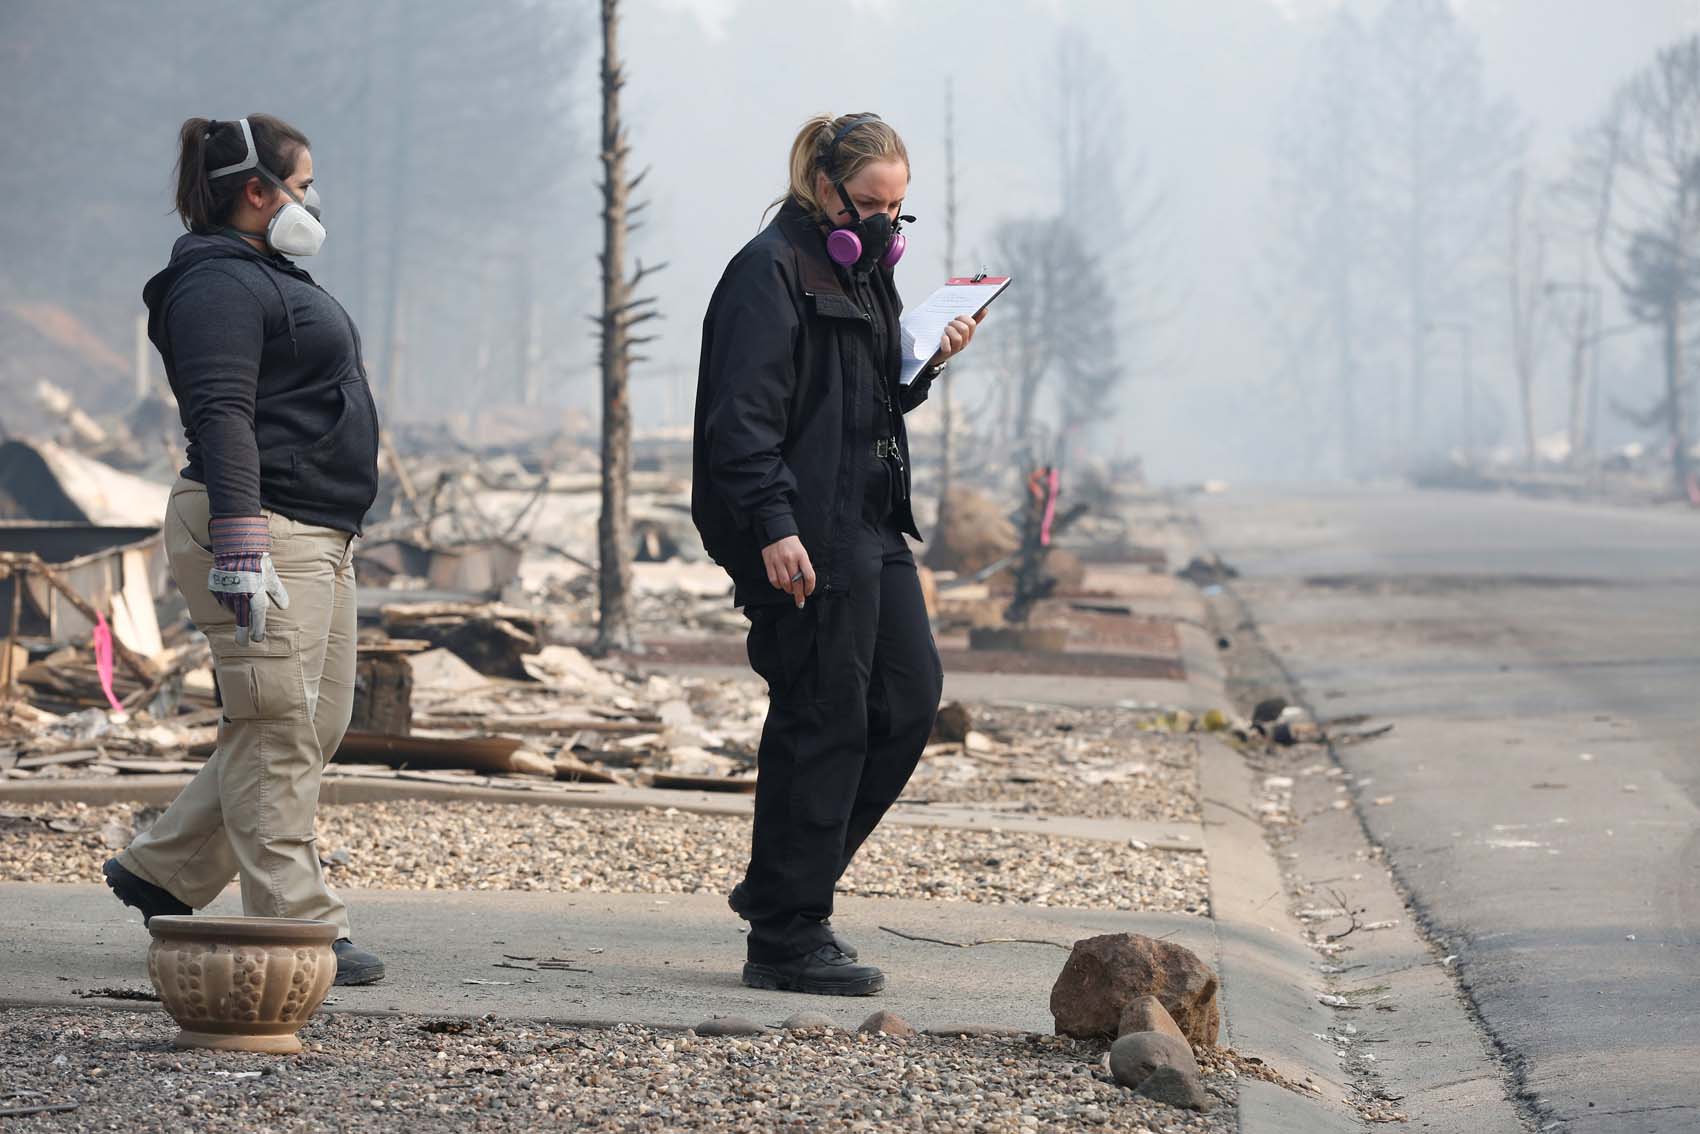 Autoridades dan por controlado incendio de California que se cobró 85 vidas